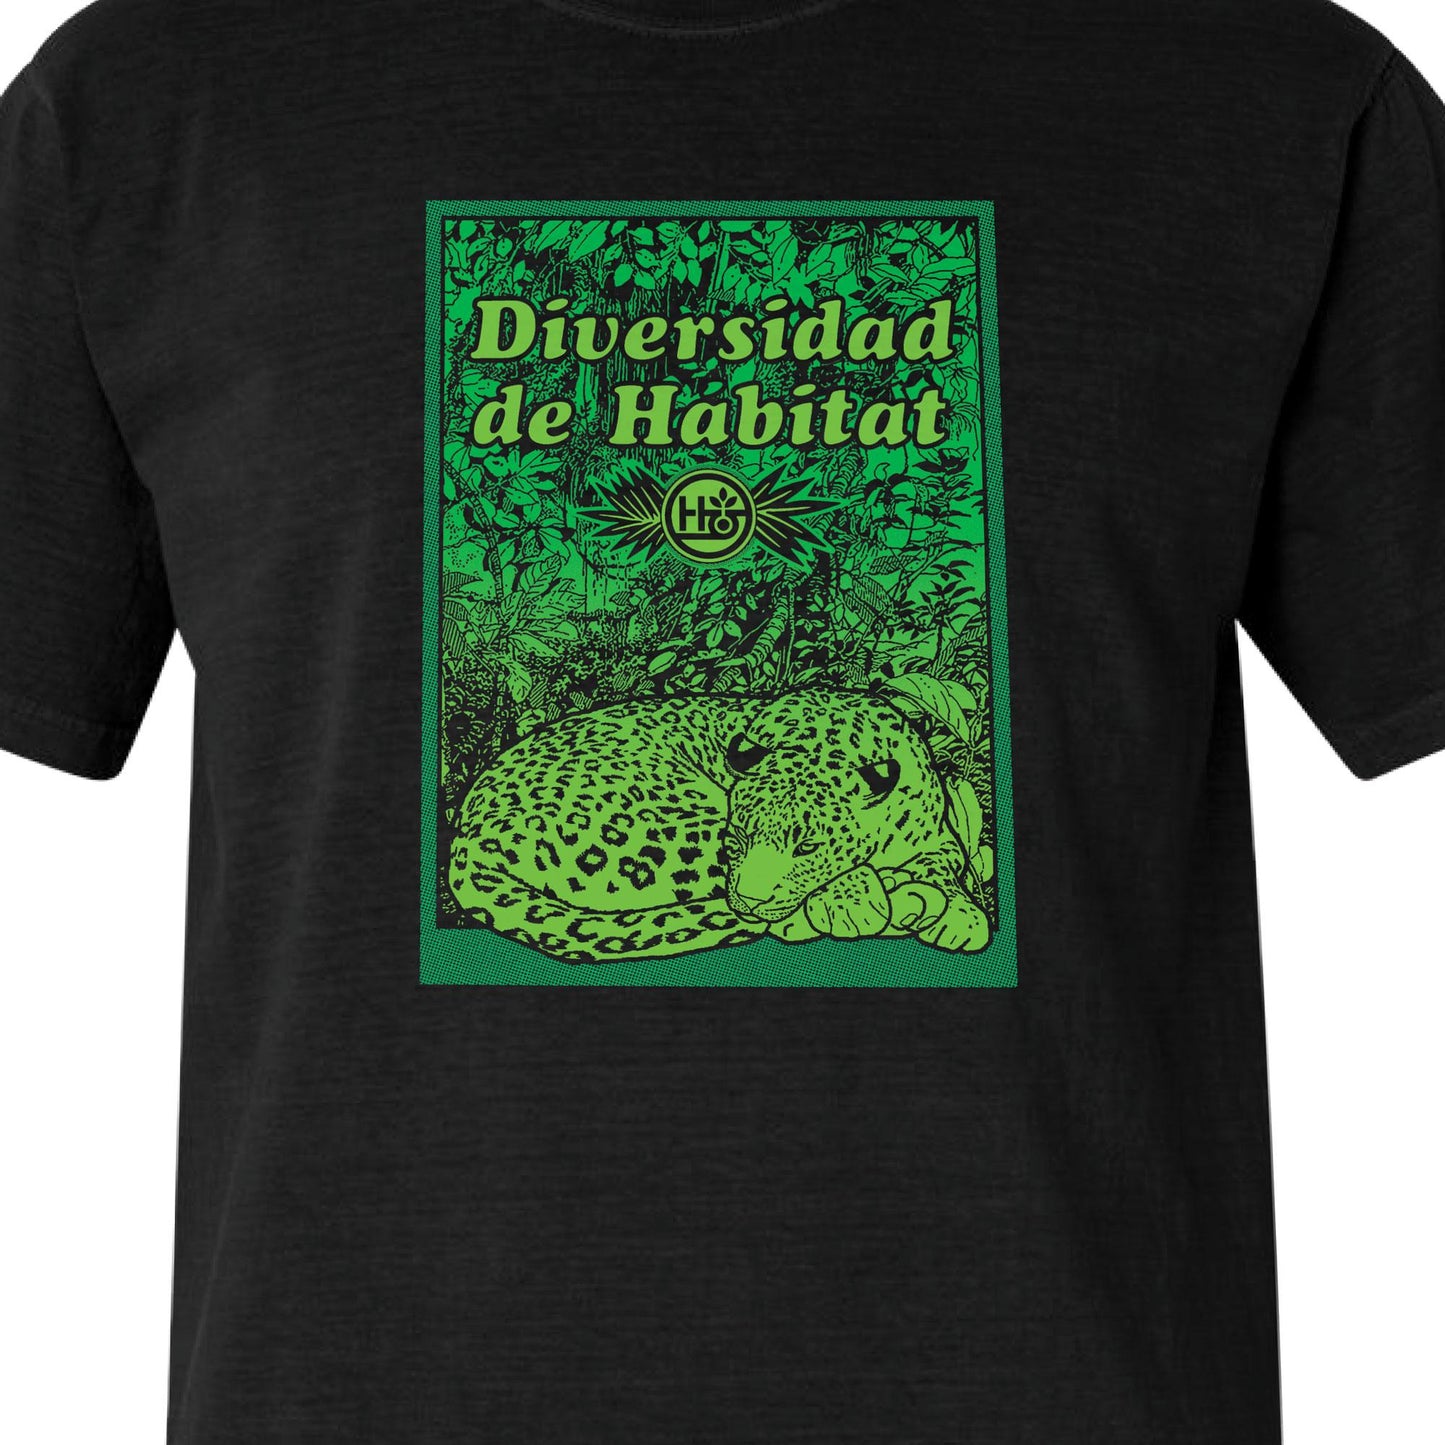 Diversidad de Habitat T-Shirt